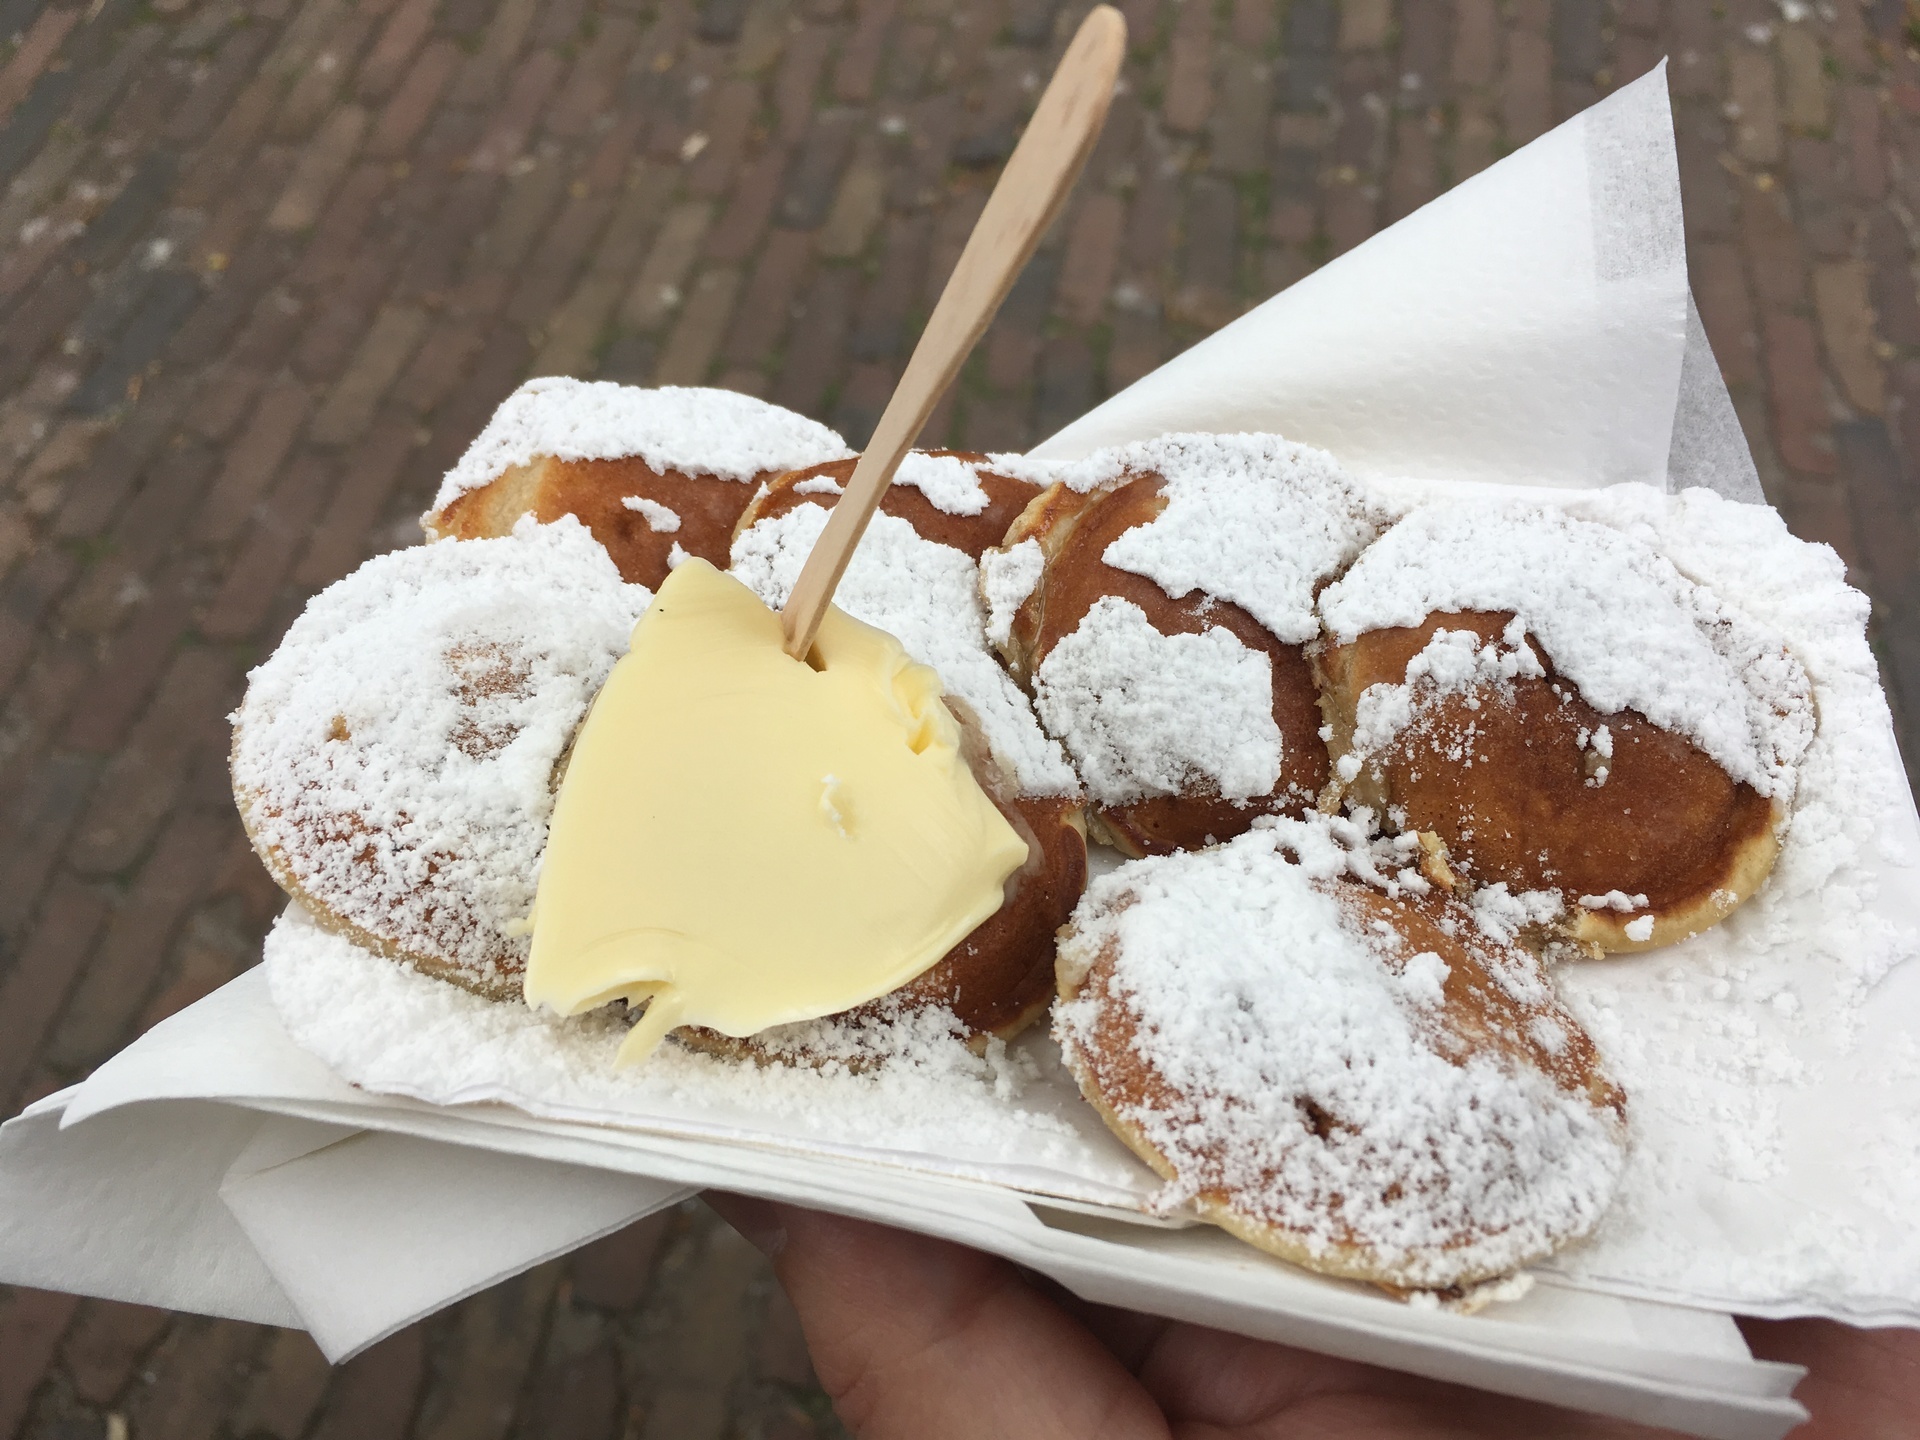 オランダ伝統の小さいパンケーキpoffertjesを作ろう オランダに住むとこうなる